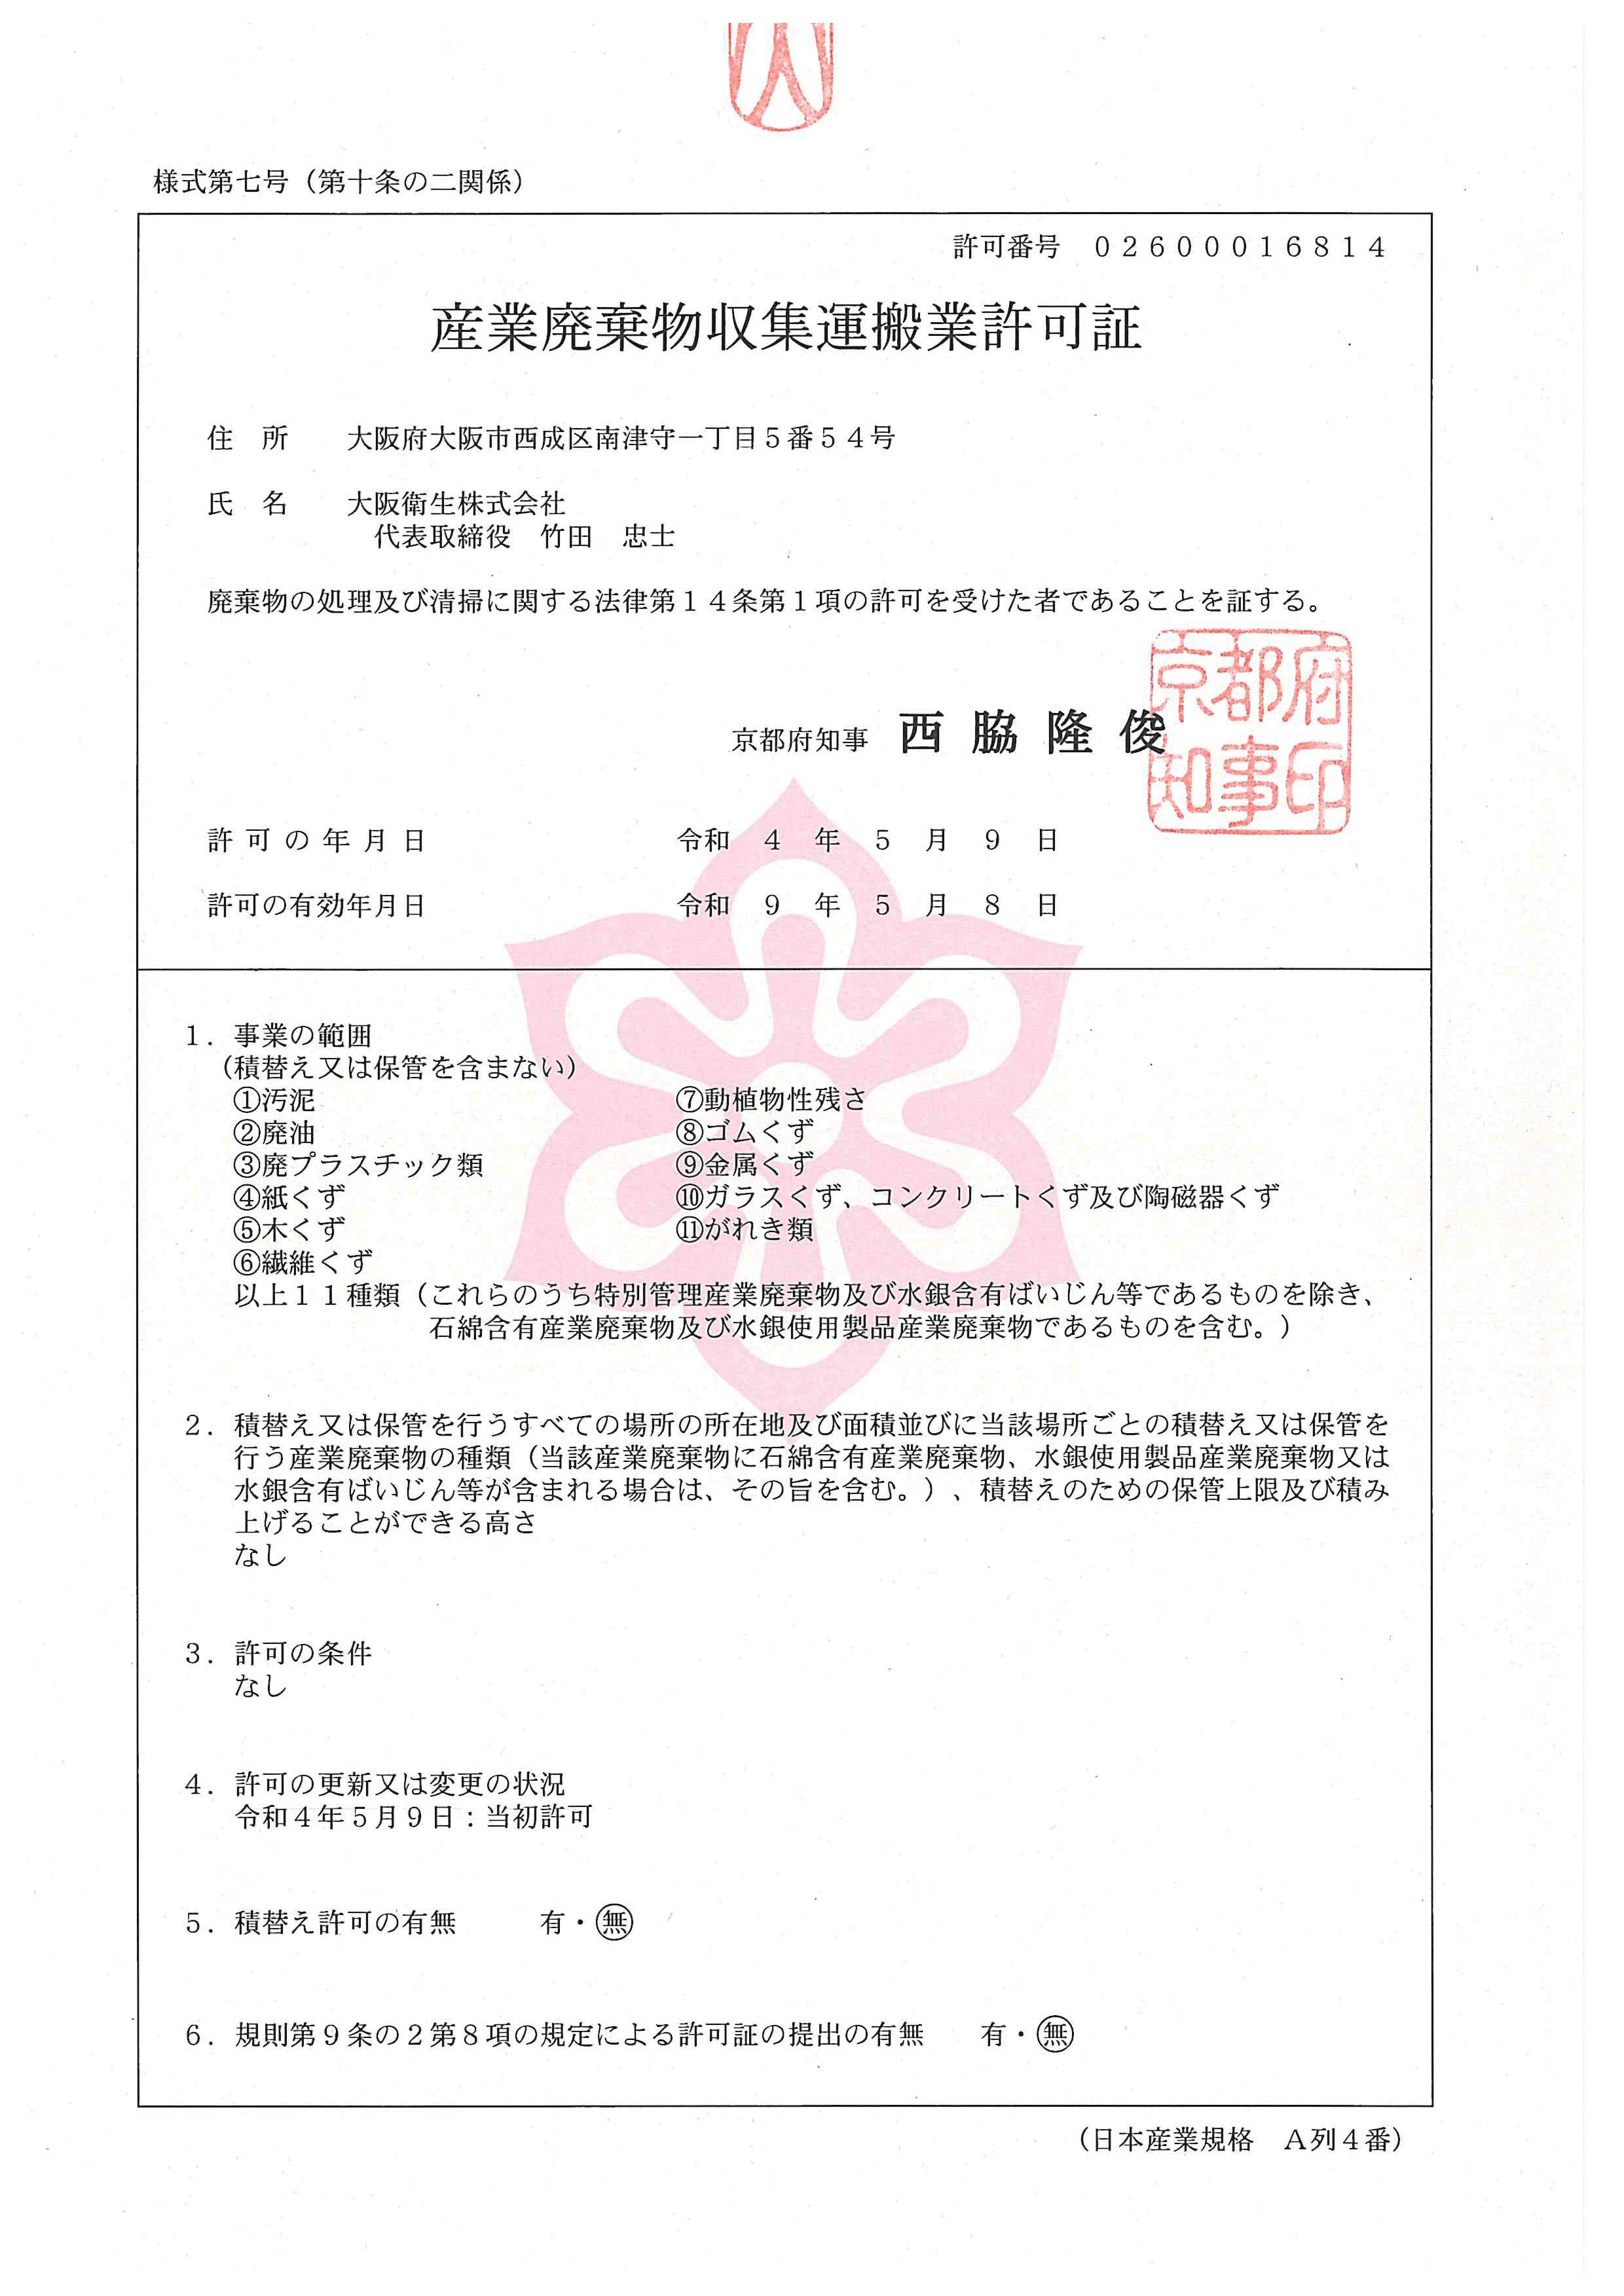 京都府産業廃棄物収集運搬業許可証（許可番号02600016814）